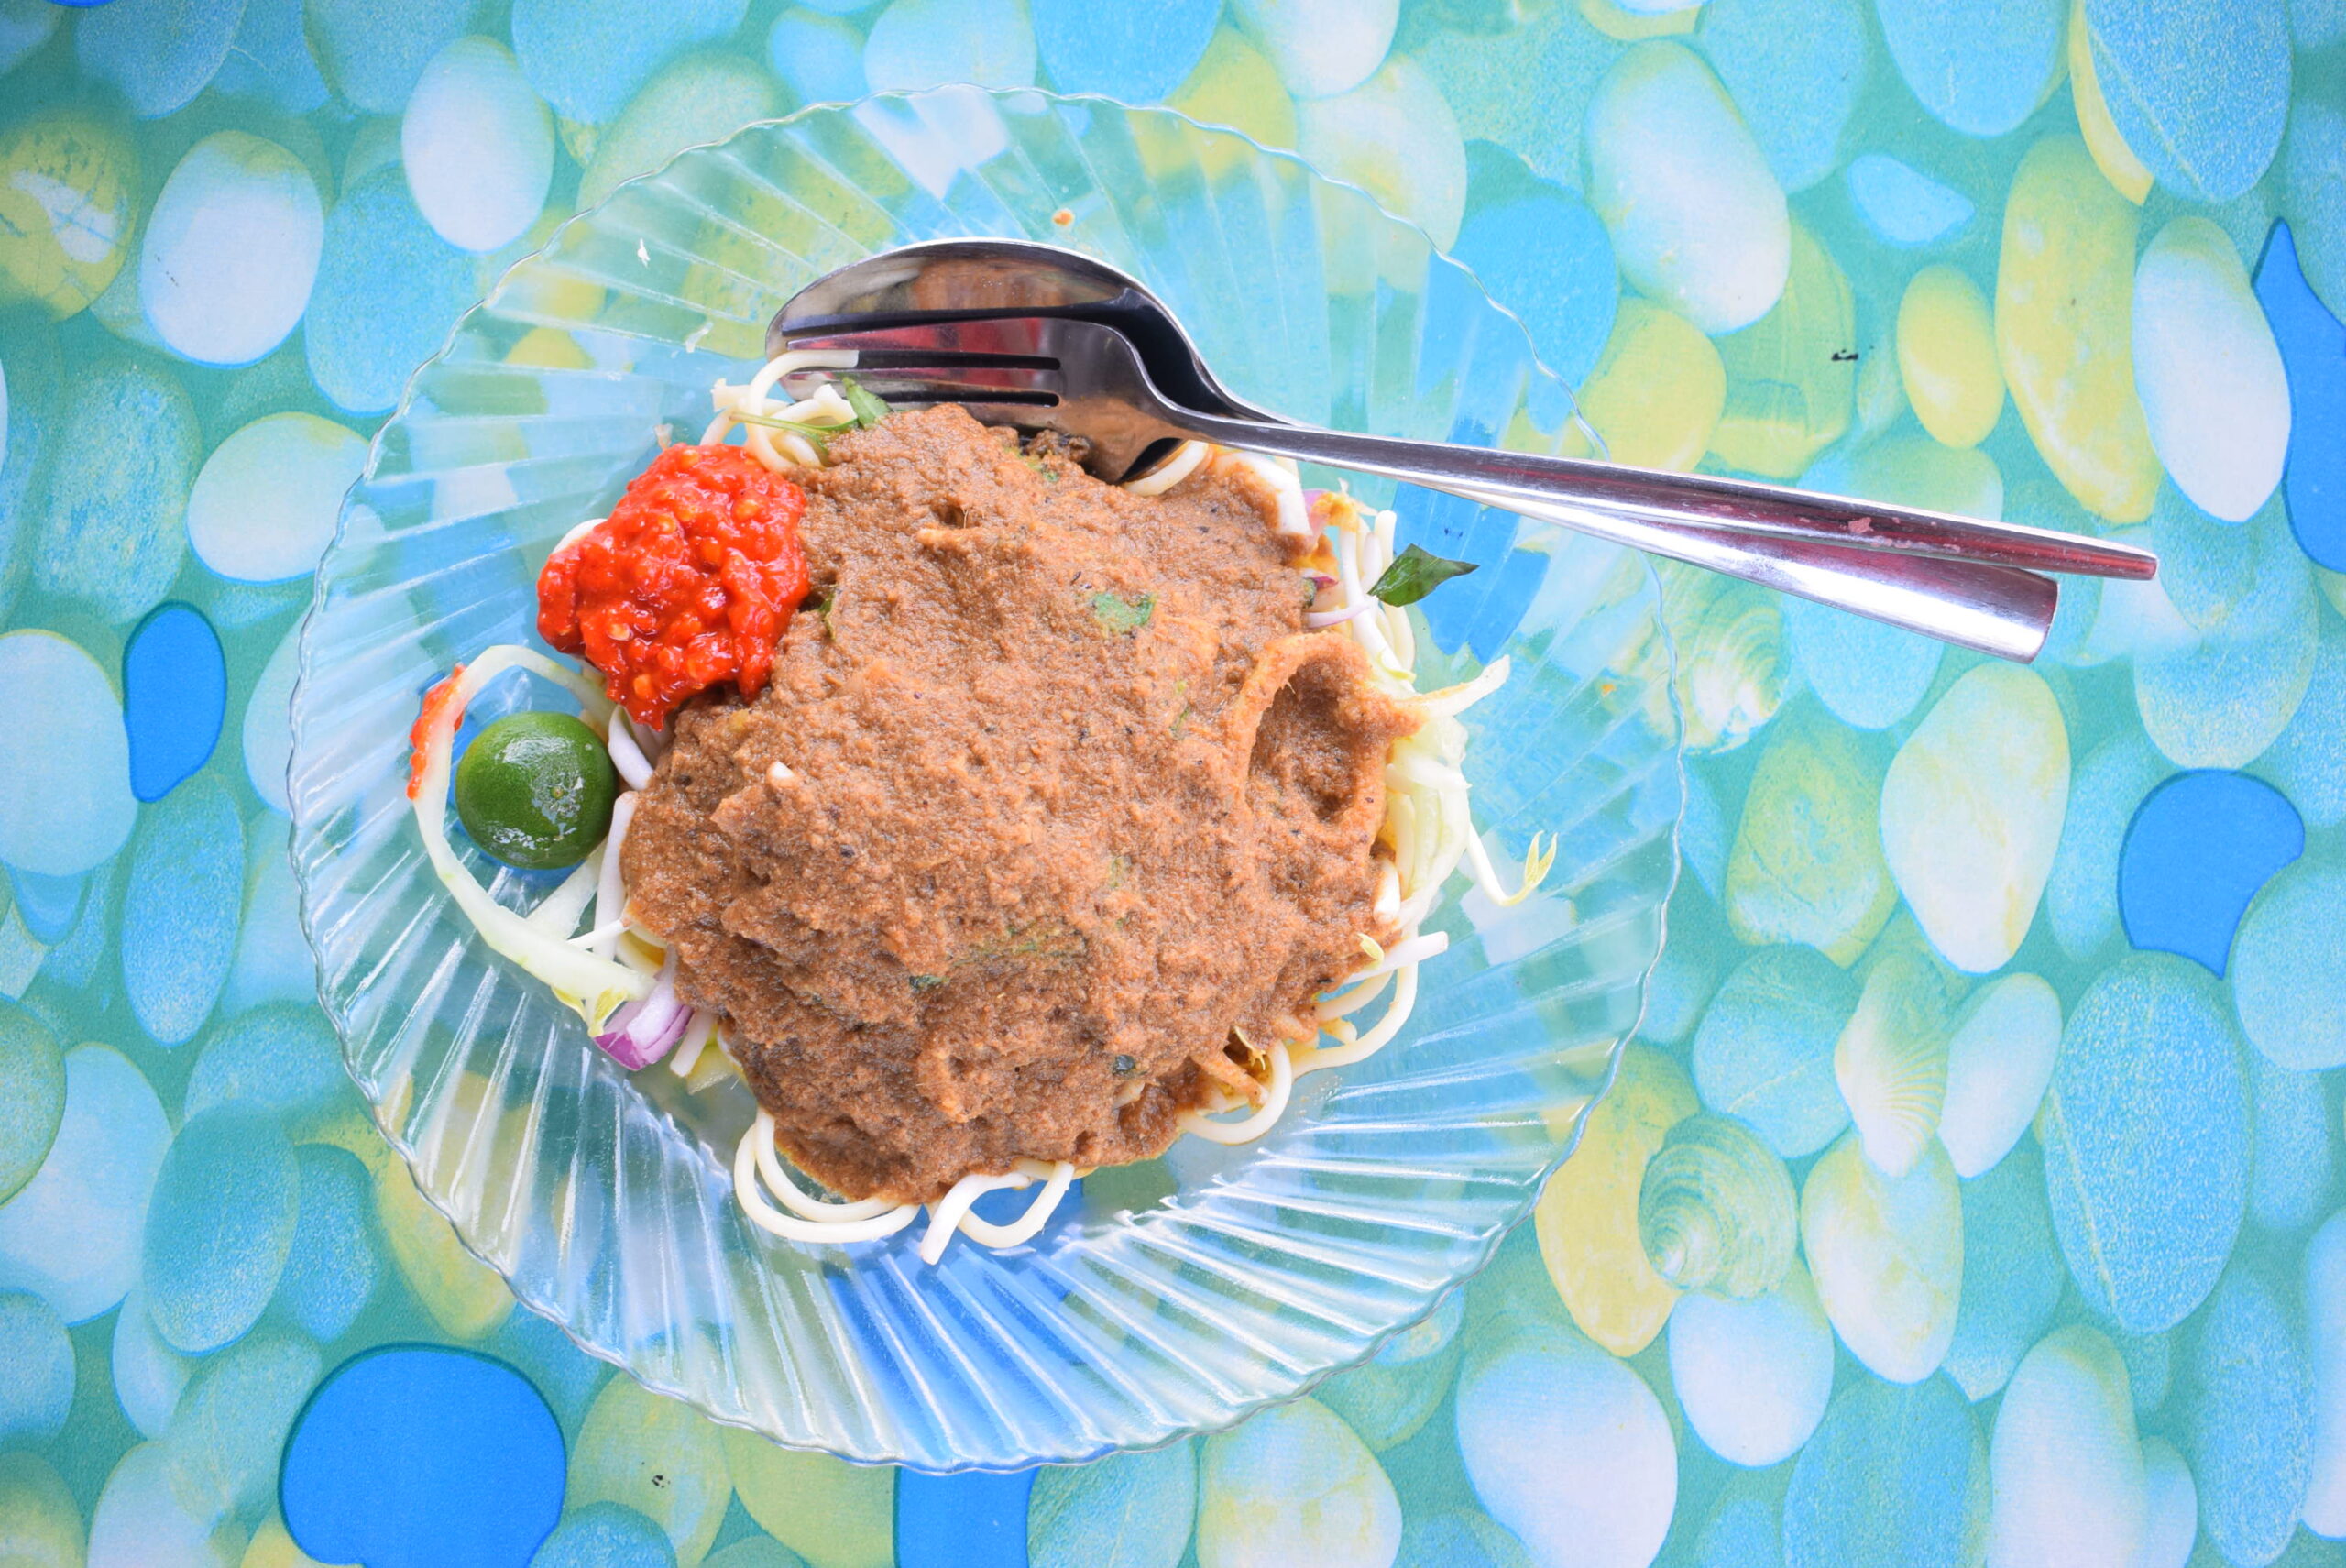 ラクサ・ジョホール Laksa Johor。見た目は地味だが、魚やハーブが入った滋味深い味。麺がスパゲティなのは、昔のジョホール州の王様のお気に入りに由来する。